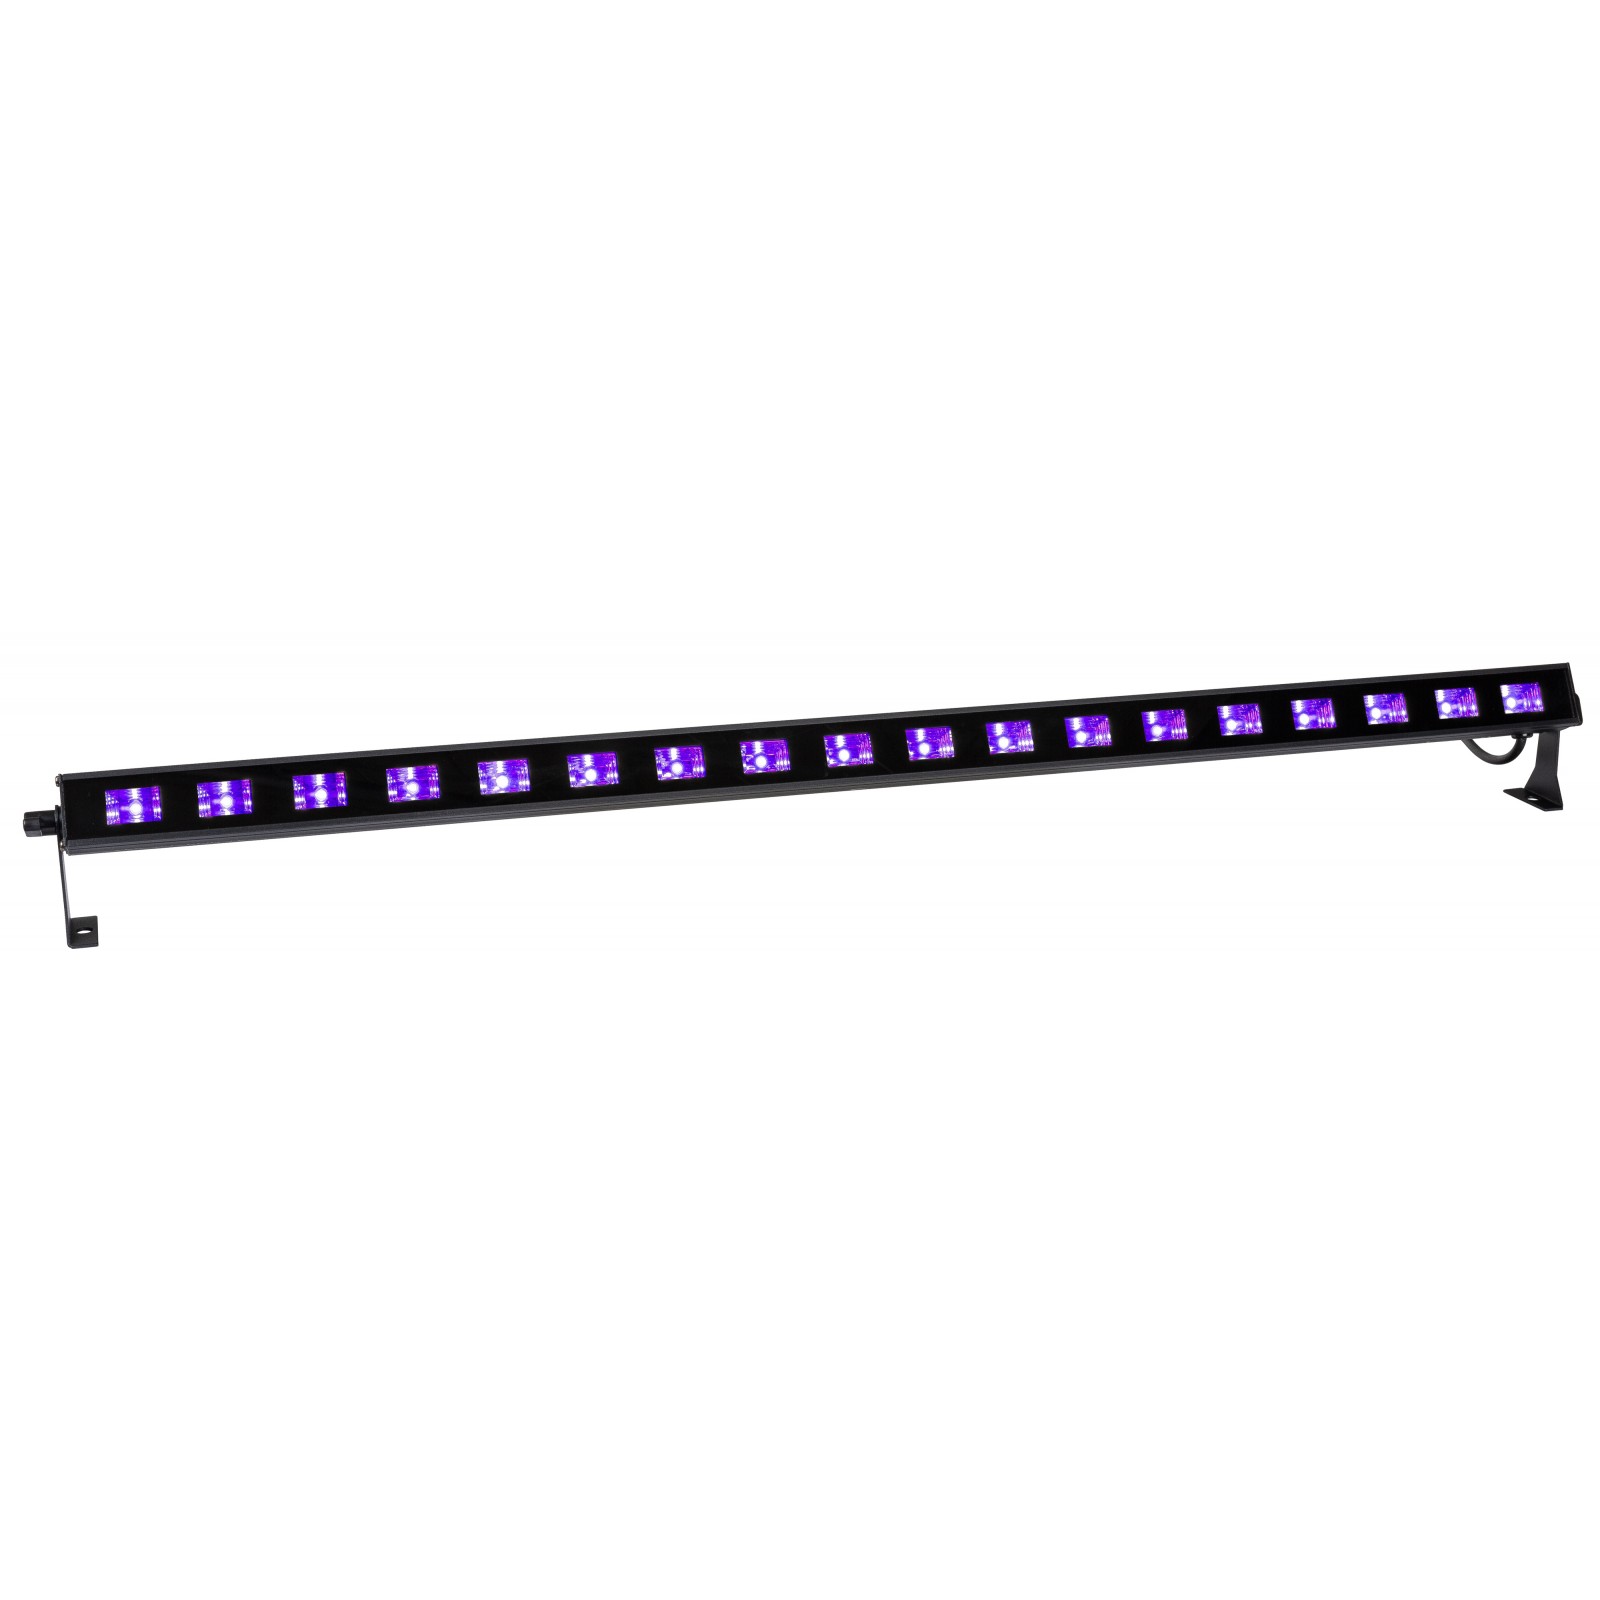 LED UV-BAR 18, Bar with 18x3W UV LEDs